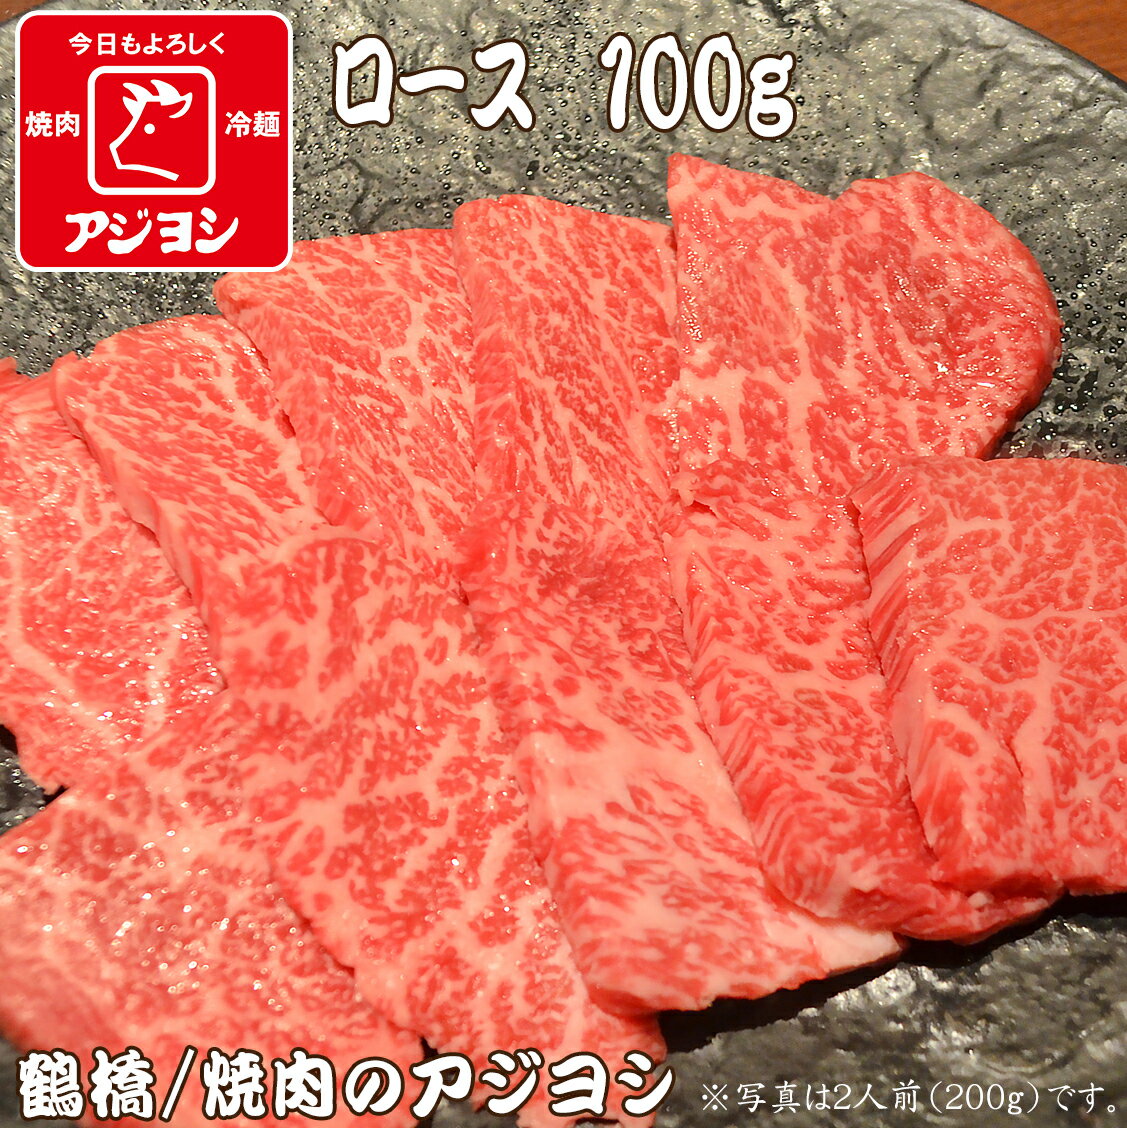 【鶴橋・焼肉のアジヨシ】牛肉 国産 ロース100g